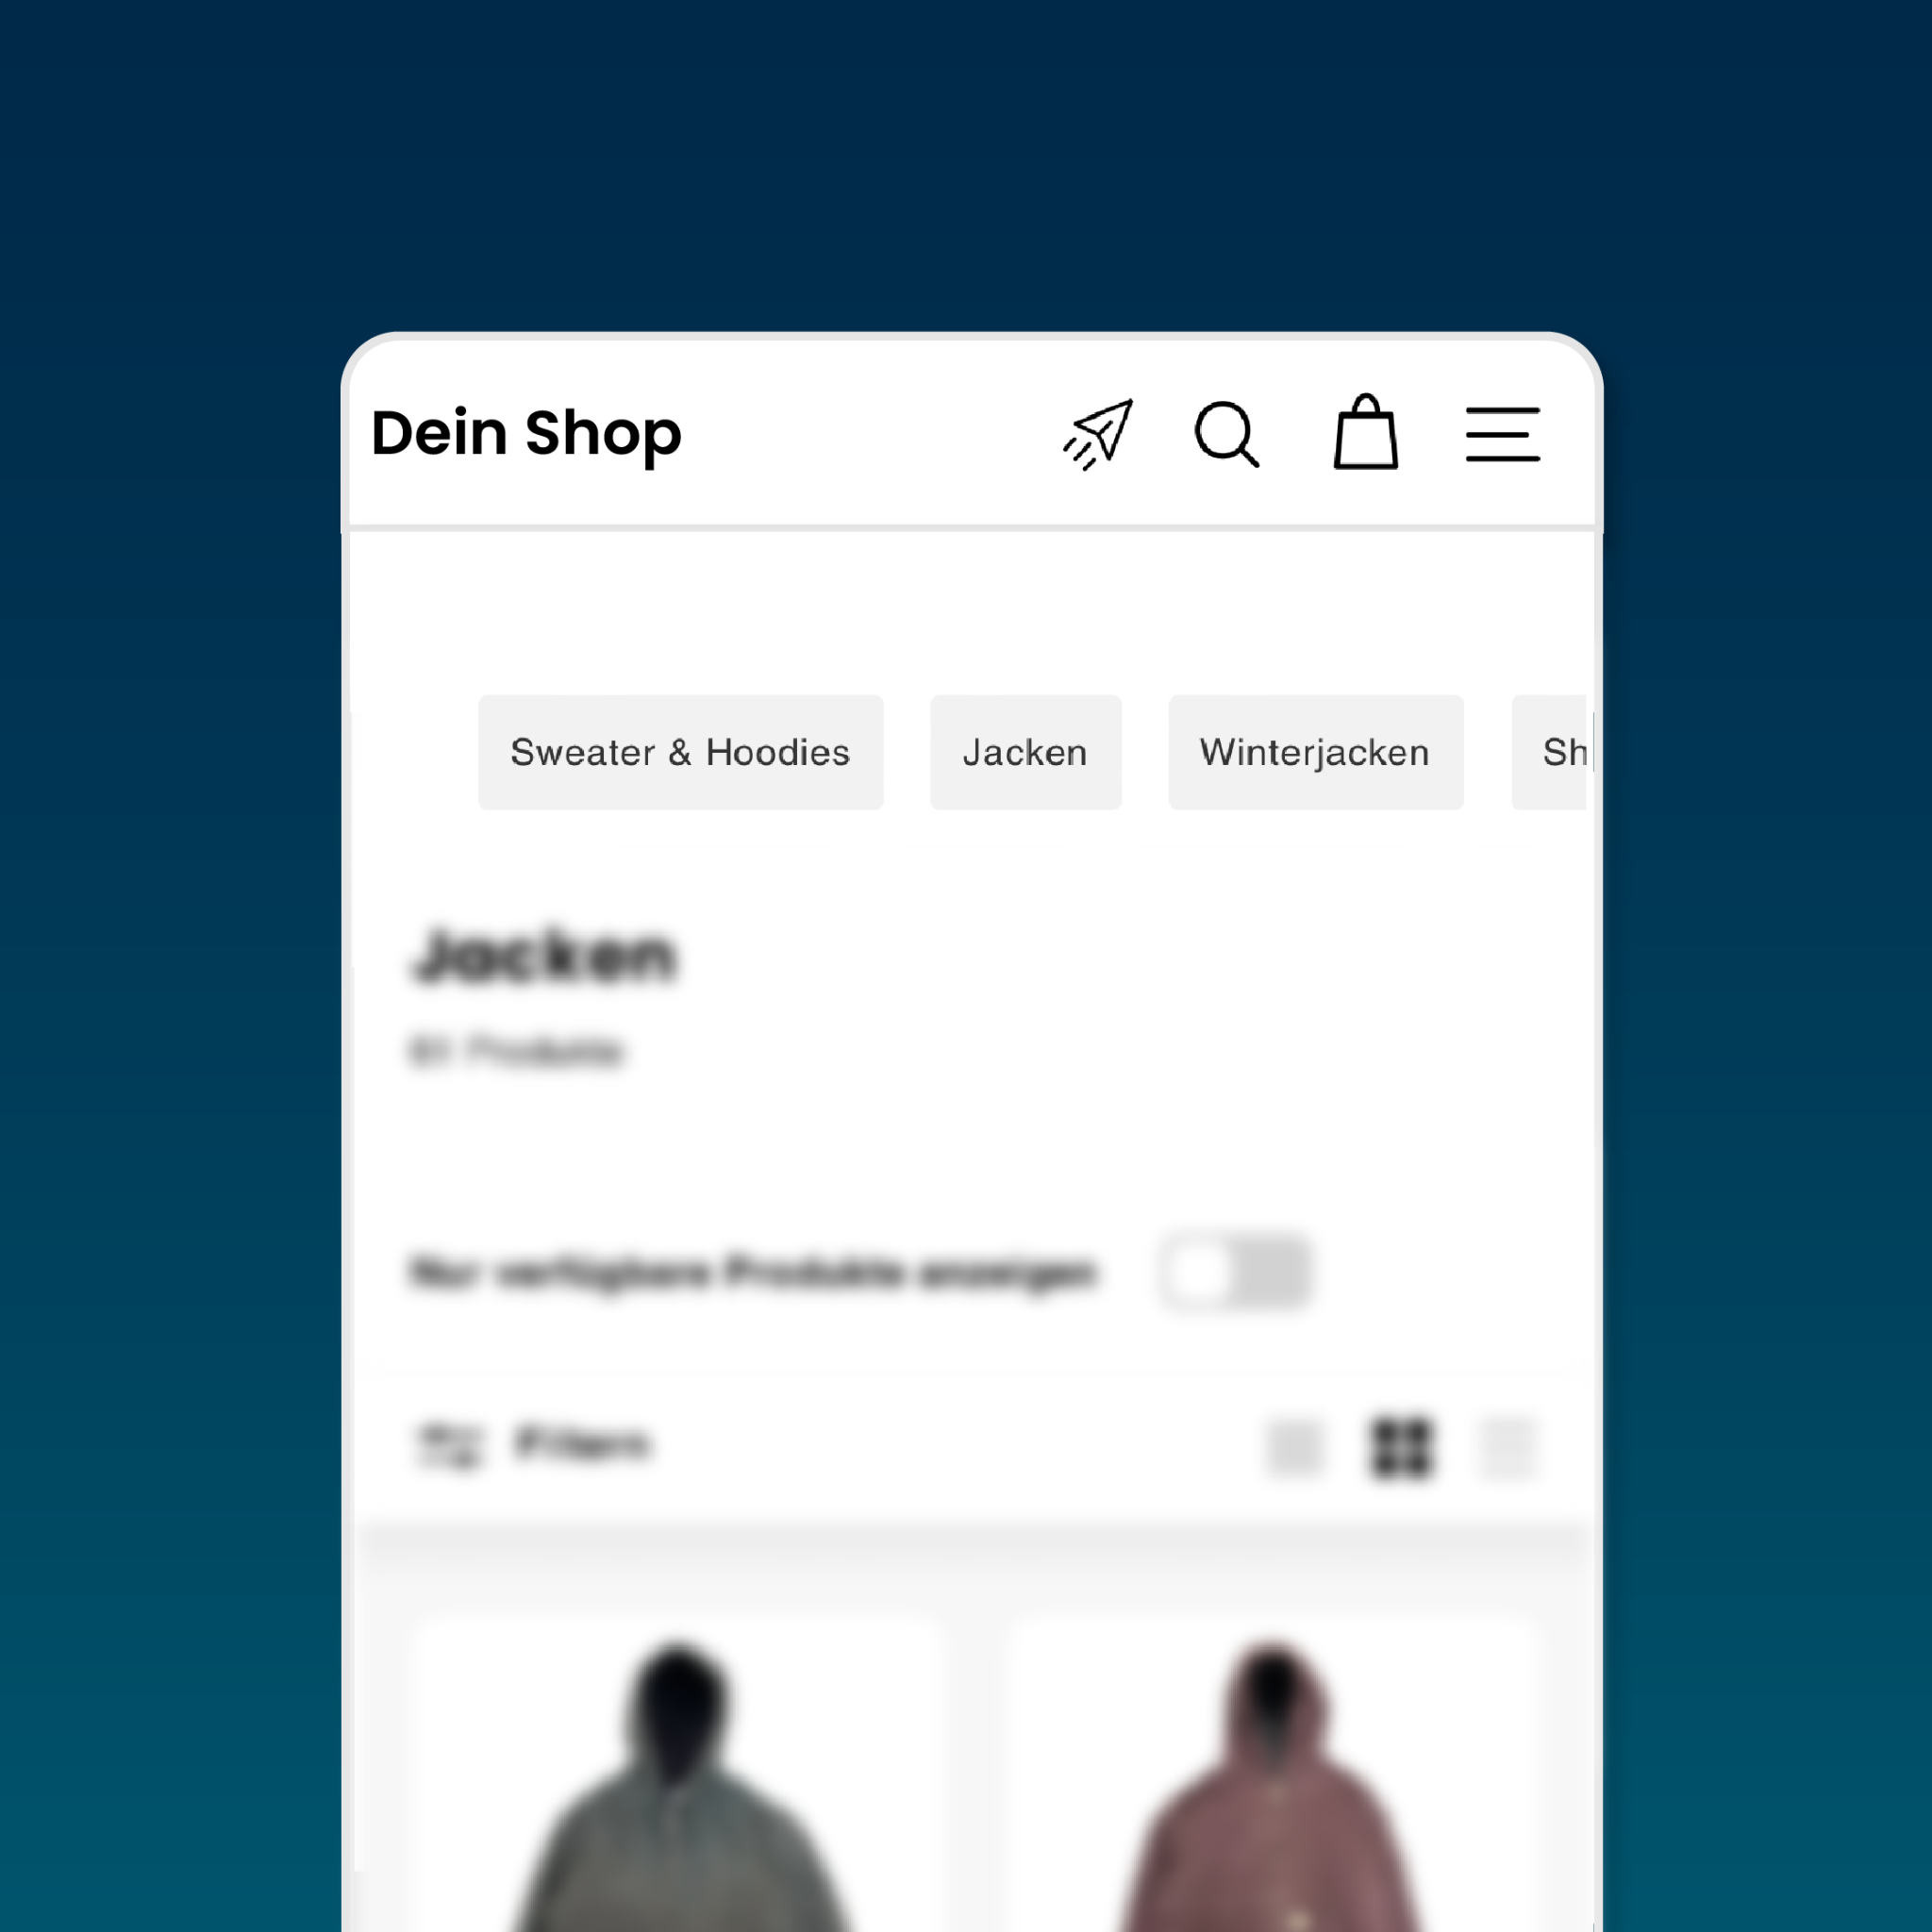 Kategorie Slider Section für Shopify-Shops von Floow Media: Präsentieren Sie Ihren Kunden auf ansprechende Weise die verschiedenen Kategorien, die Ihr Shop anbietet, und erleichtern Sie ihnen die Navigation durch Ihr Angebot.